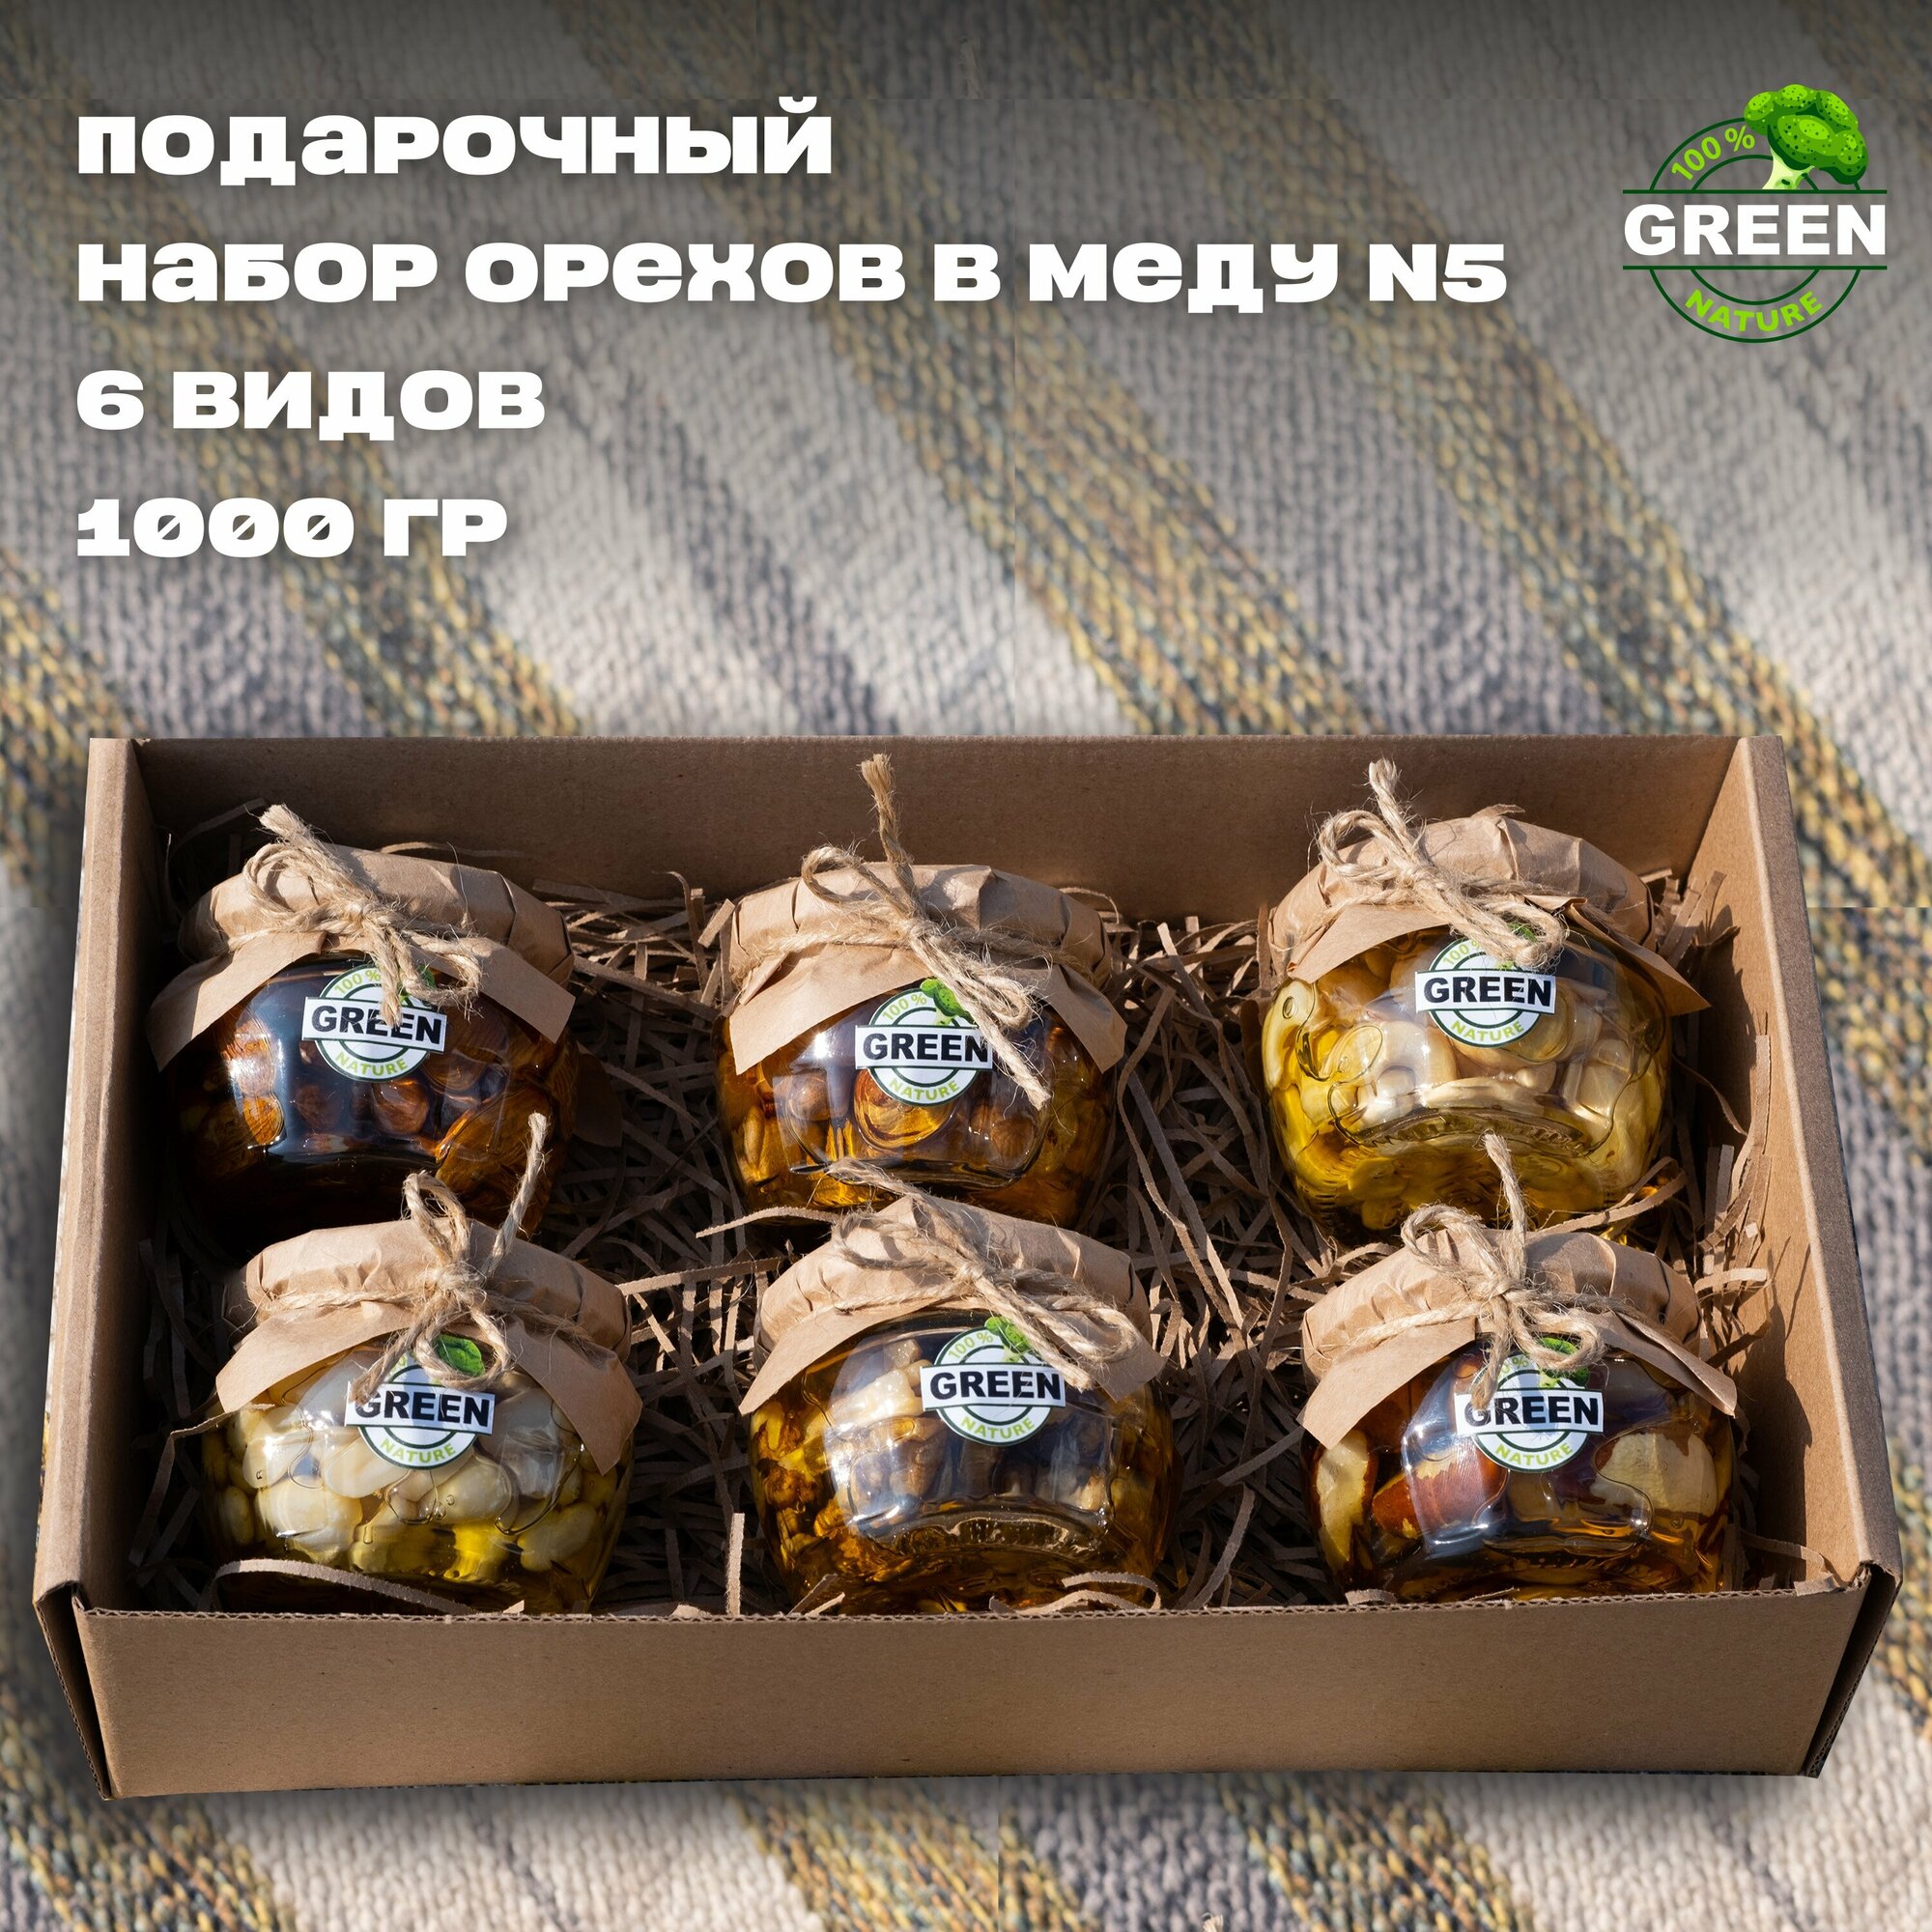 Подарочный набор орехов в меду №5 миндаль, кешью, фундук, арахис, бразильский, грецкий 1000 грамм